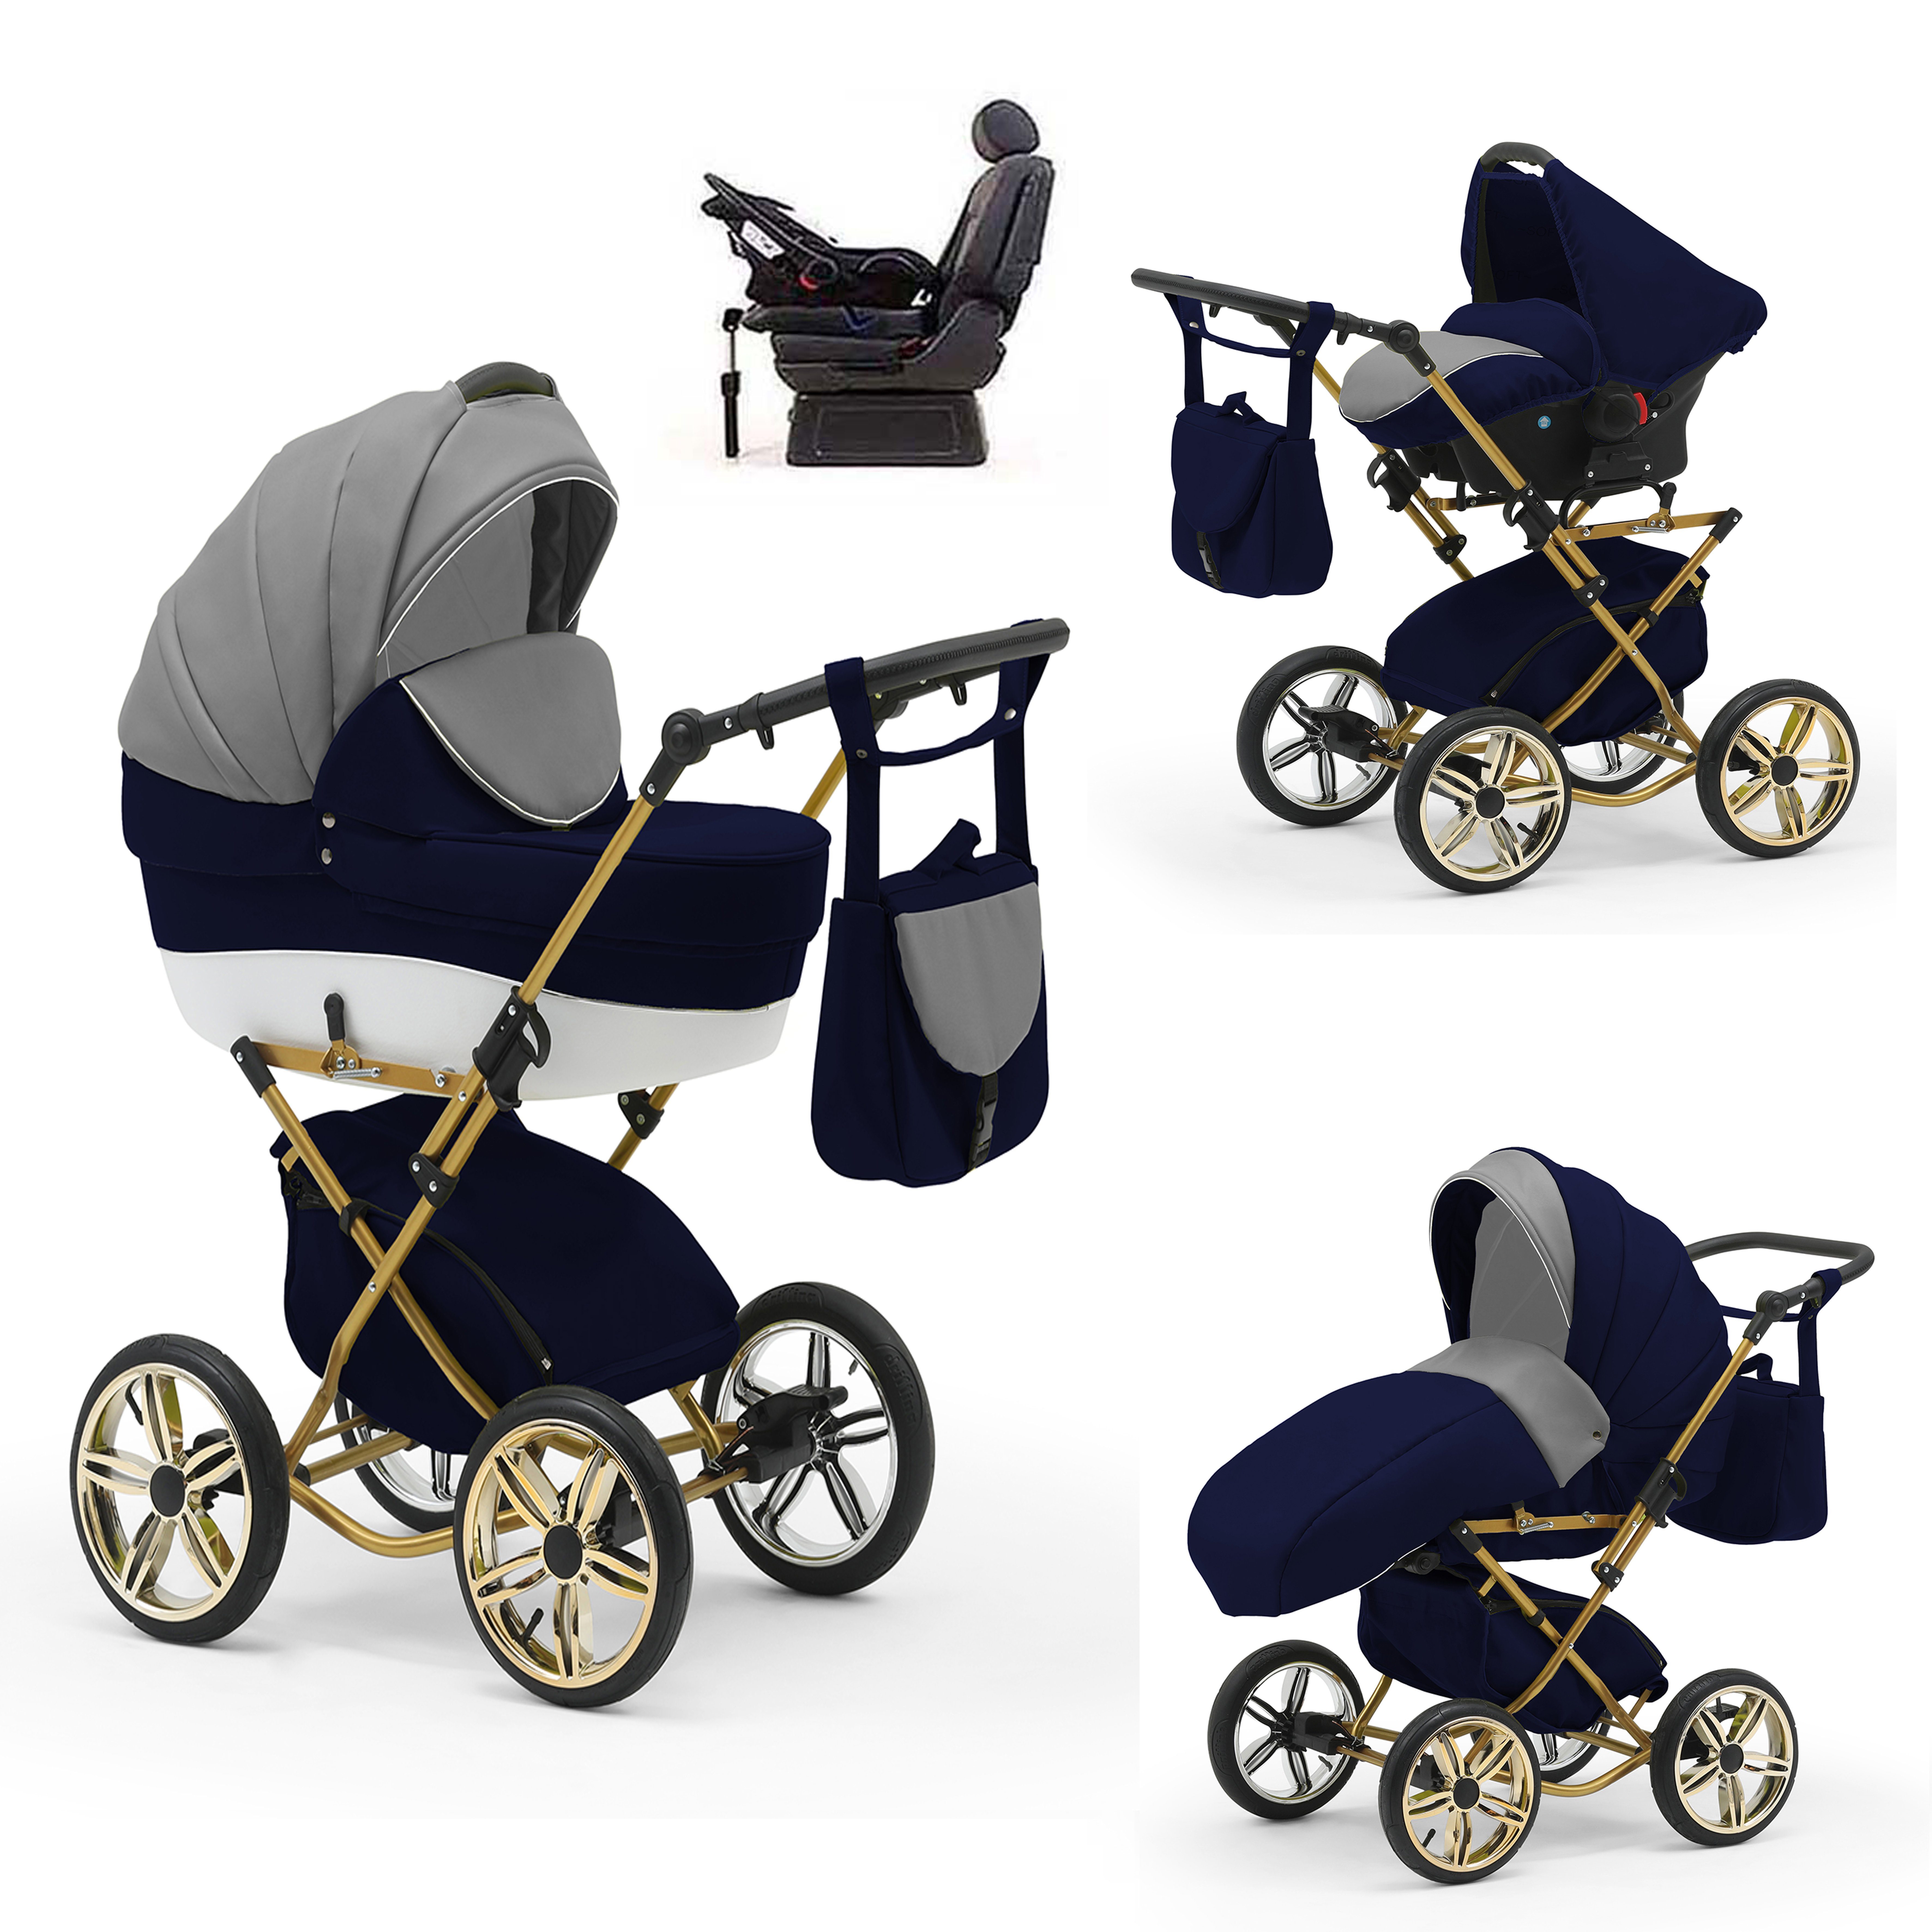 babies-on-wheels Kombi-Kinderwagen Sorento 4 in 1 inkl. Autositz und Iso Base - 14 Teile - in 10 Designs Grau-Navy-Weiß